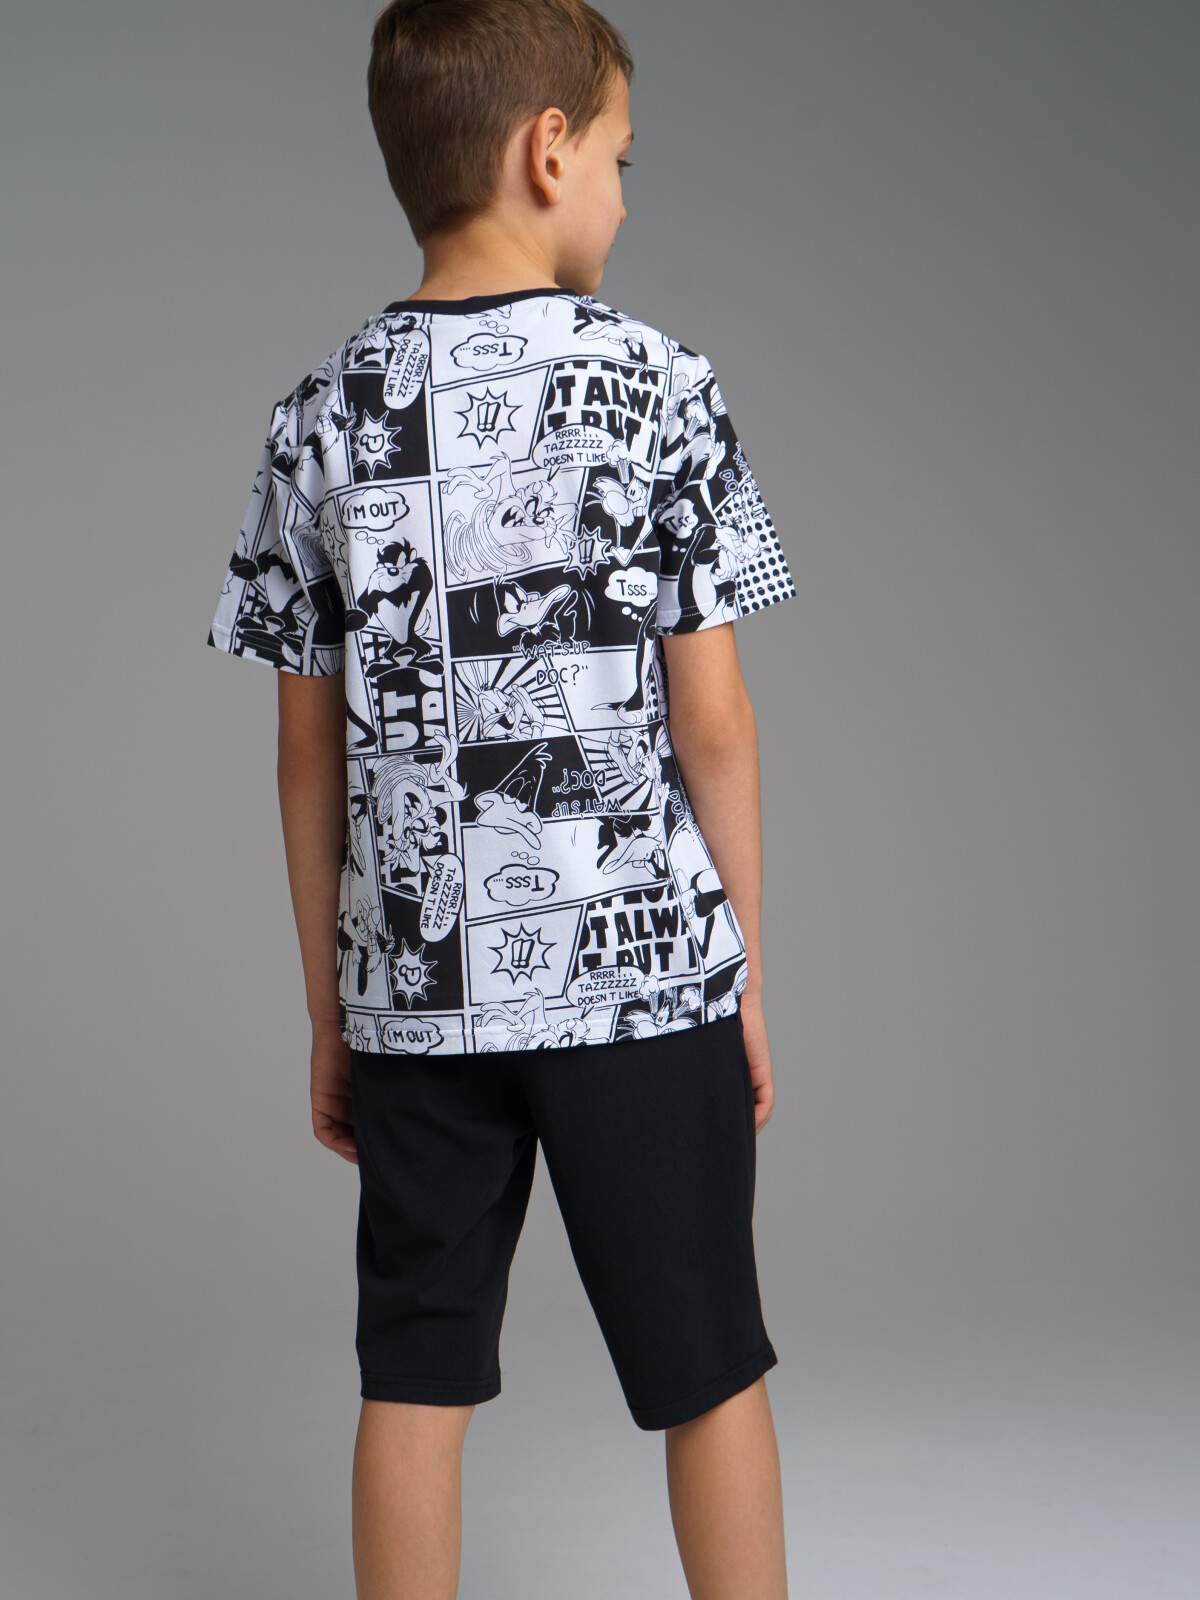 Купить комплект: футболка, шорты для мальчика PlayToday 32231616 черный, белый, 128, цены в Москве на СберМегаМаркет